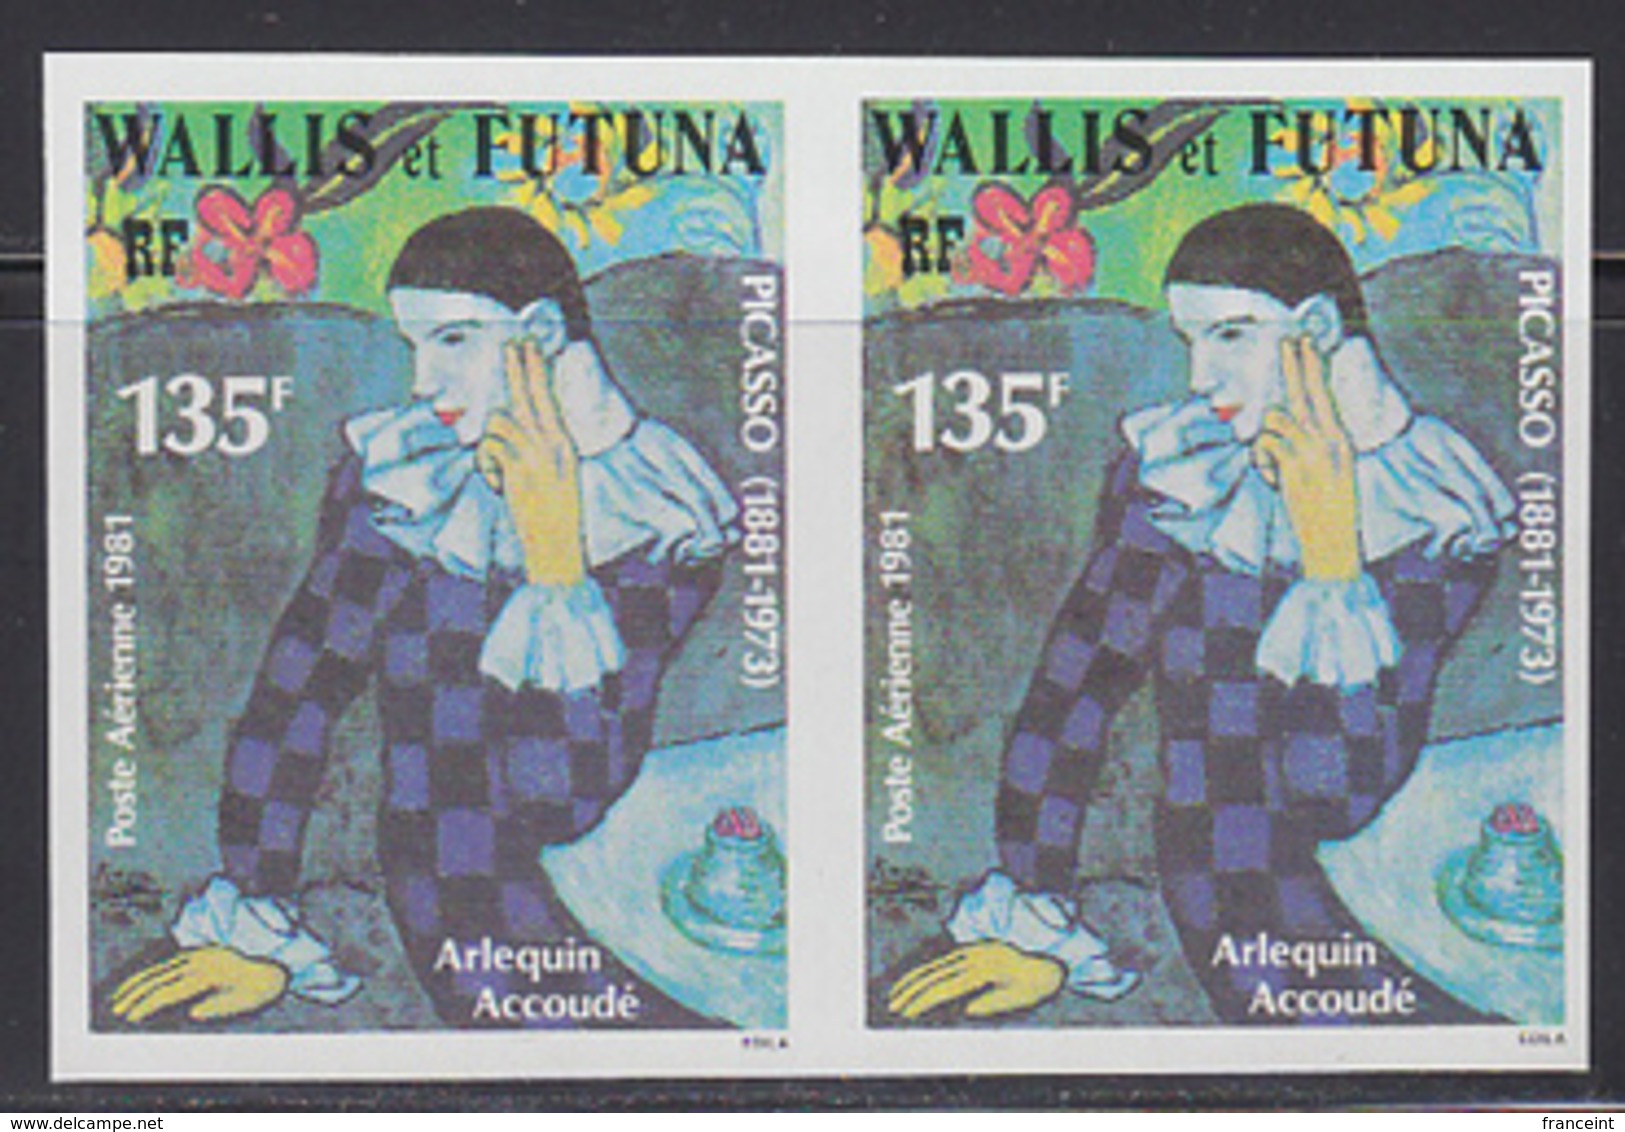 WALLIS & FUTUNA (1981) Harlequin By Picasso. Imperforate Pair. Scott No C109, Yvert No PA111. - Sin Dentar, Pruebas De Impresión Y Variedades